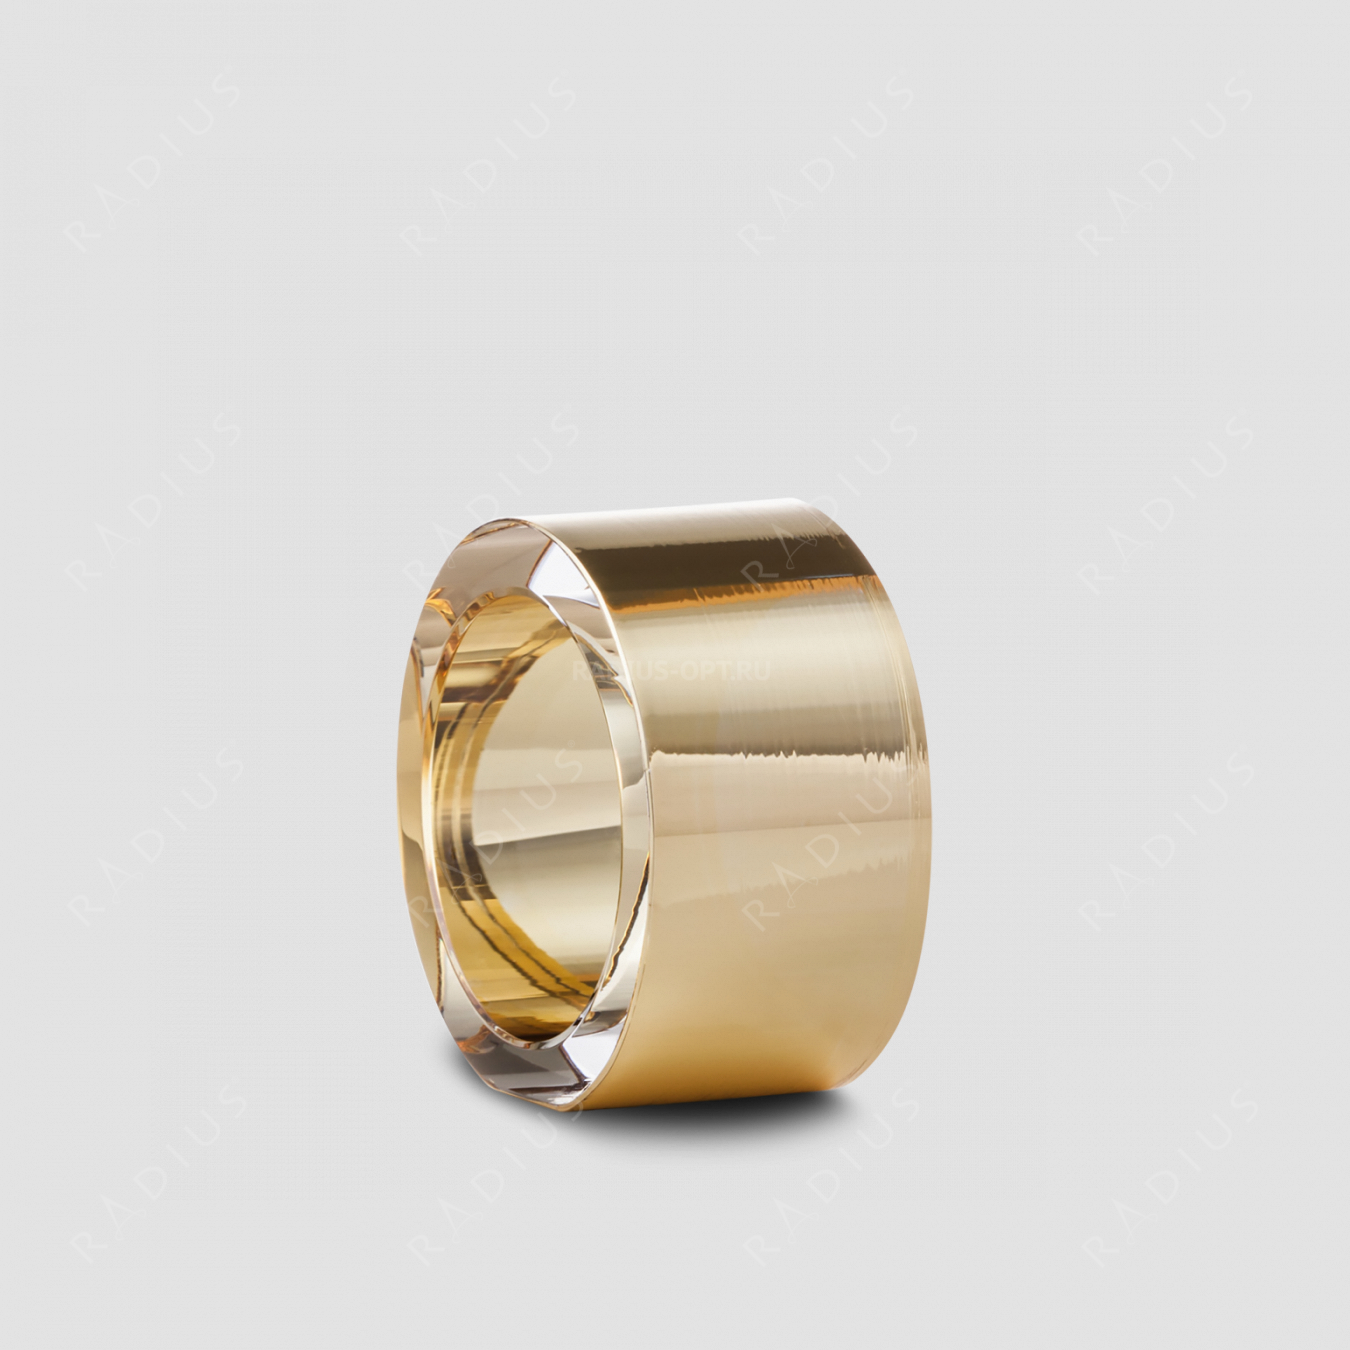 Кольцо для салфеток Gold, диаметр: 5 см, материал: бессвинцовый хрусталь, цвет: золото, серия Ravi, EISCH, Германия